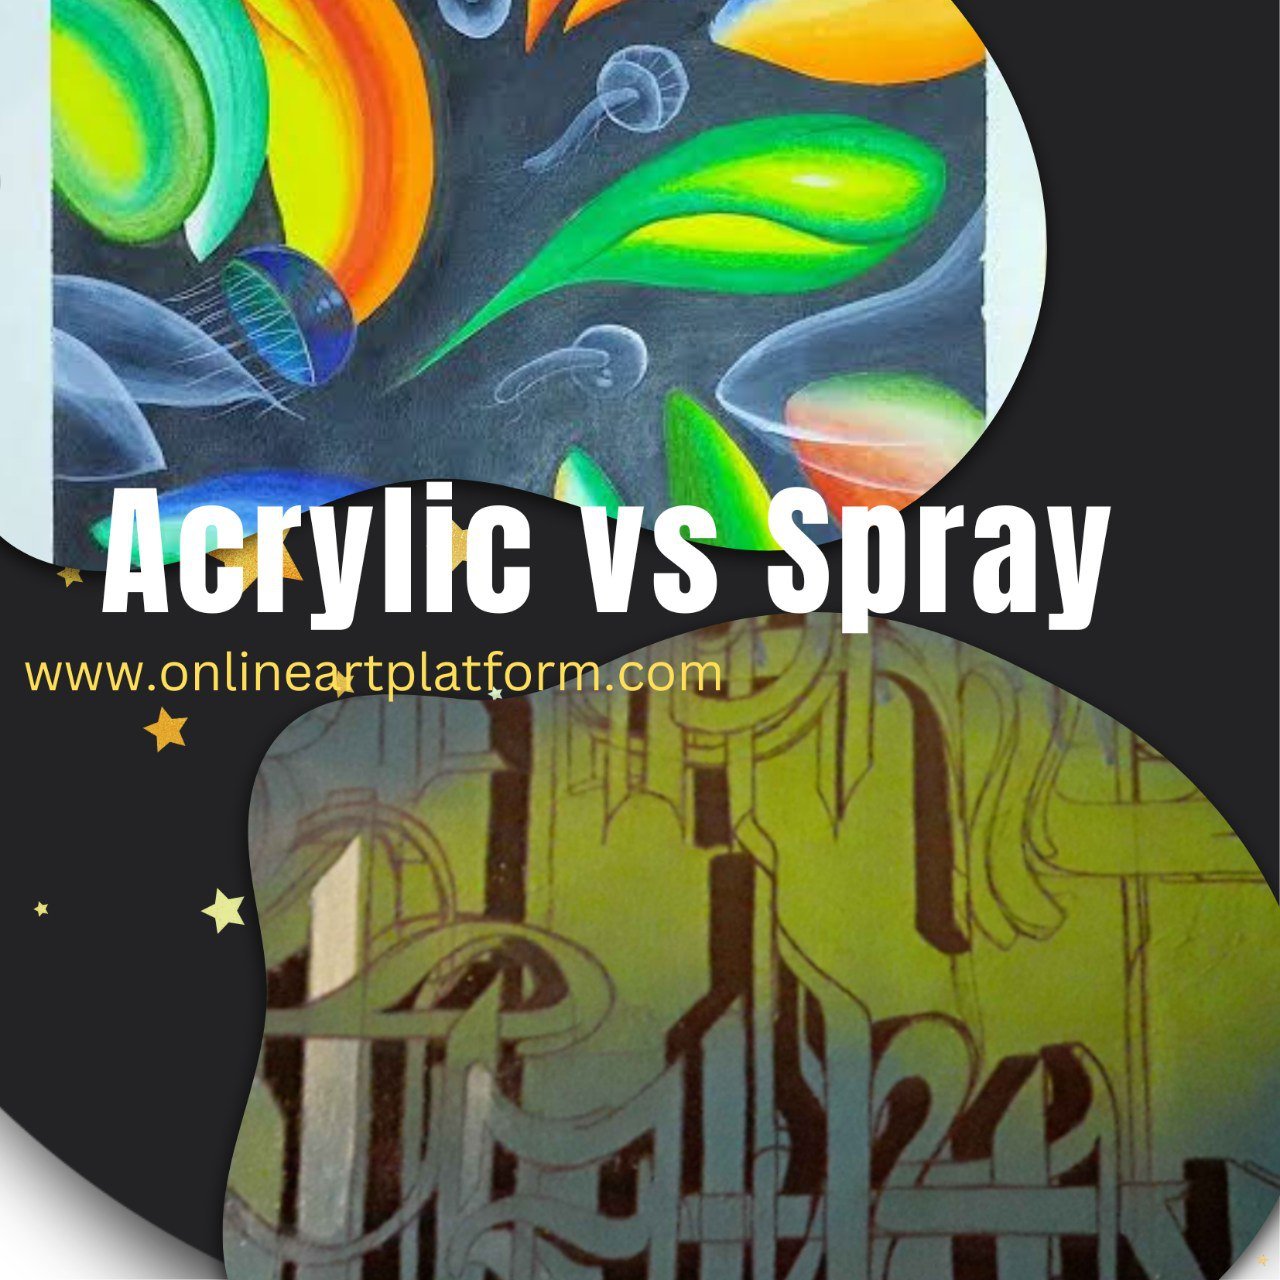 Enamel Spray Painting vs Acrylic Painting